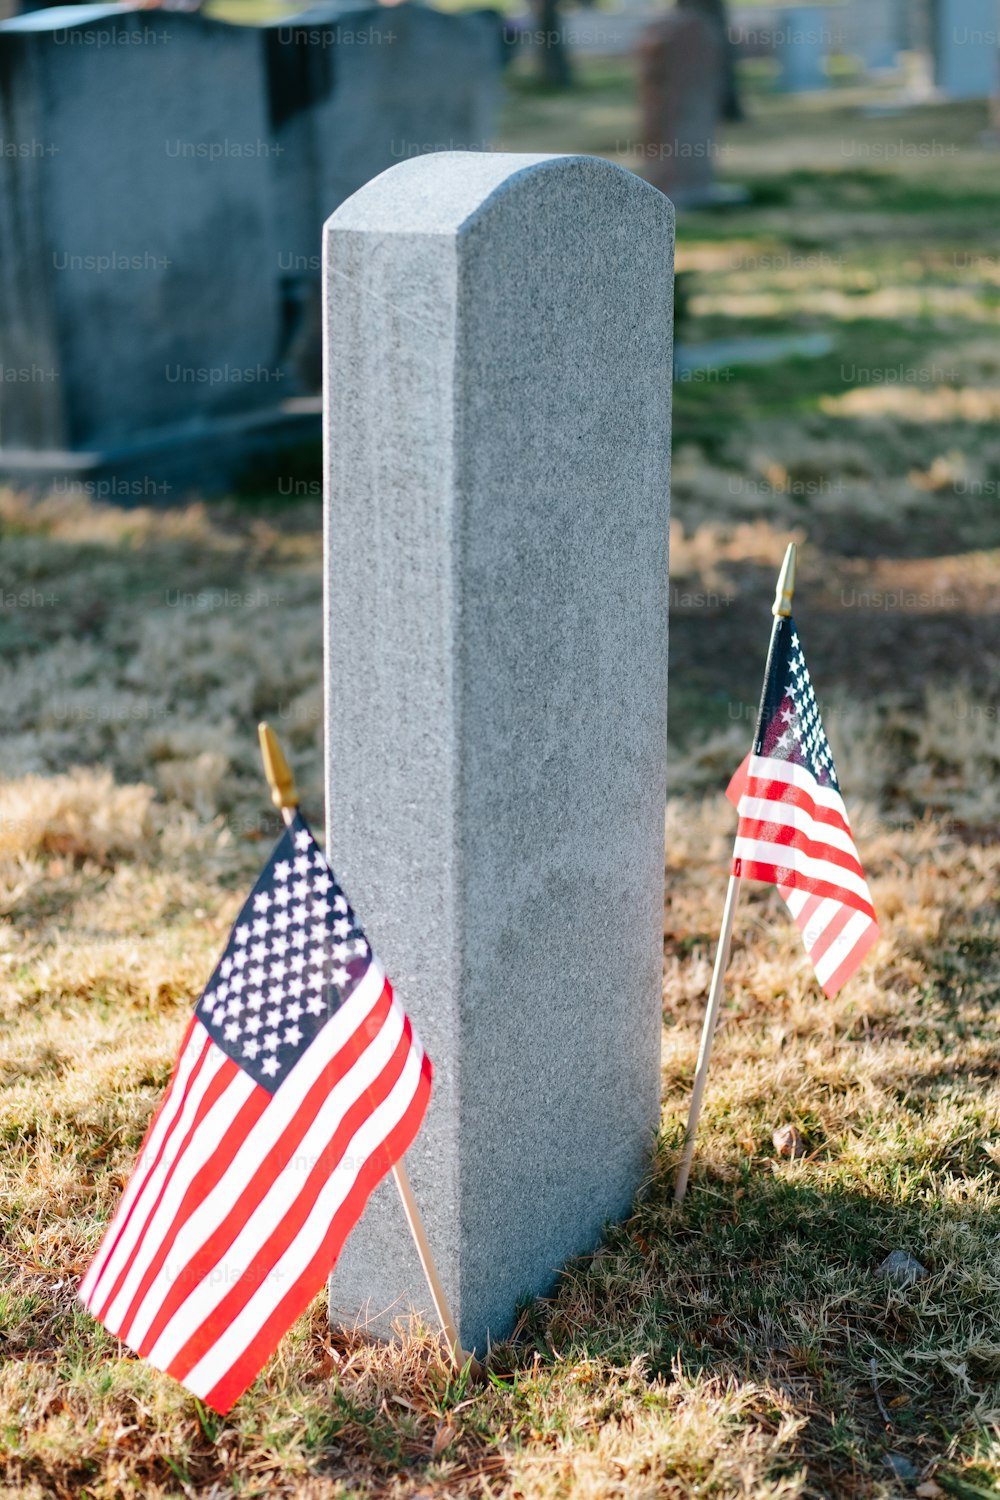 Dos banderas estadounidenses se colocan junto a una tumba